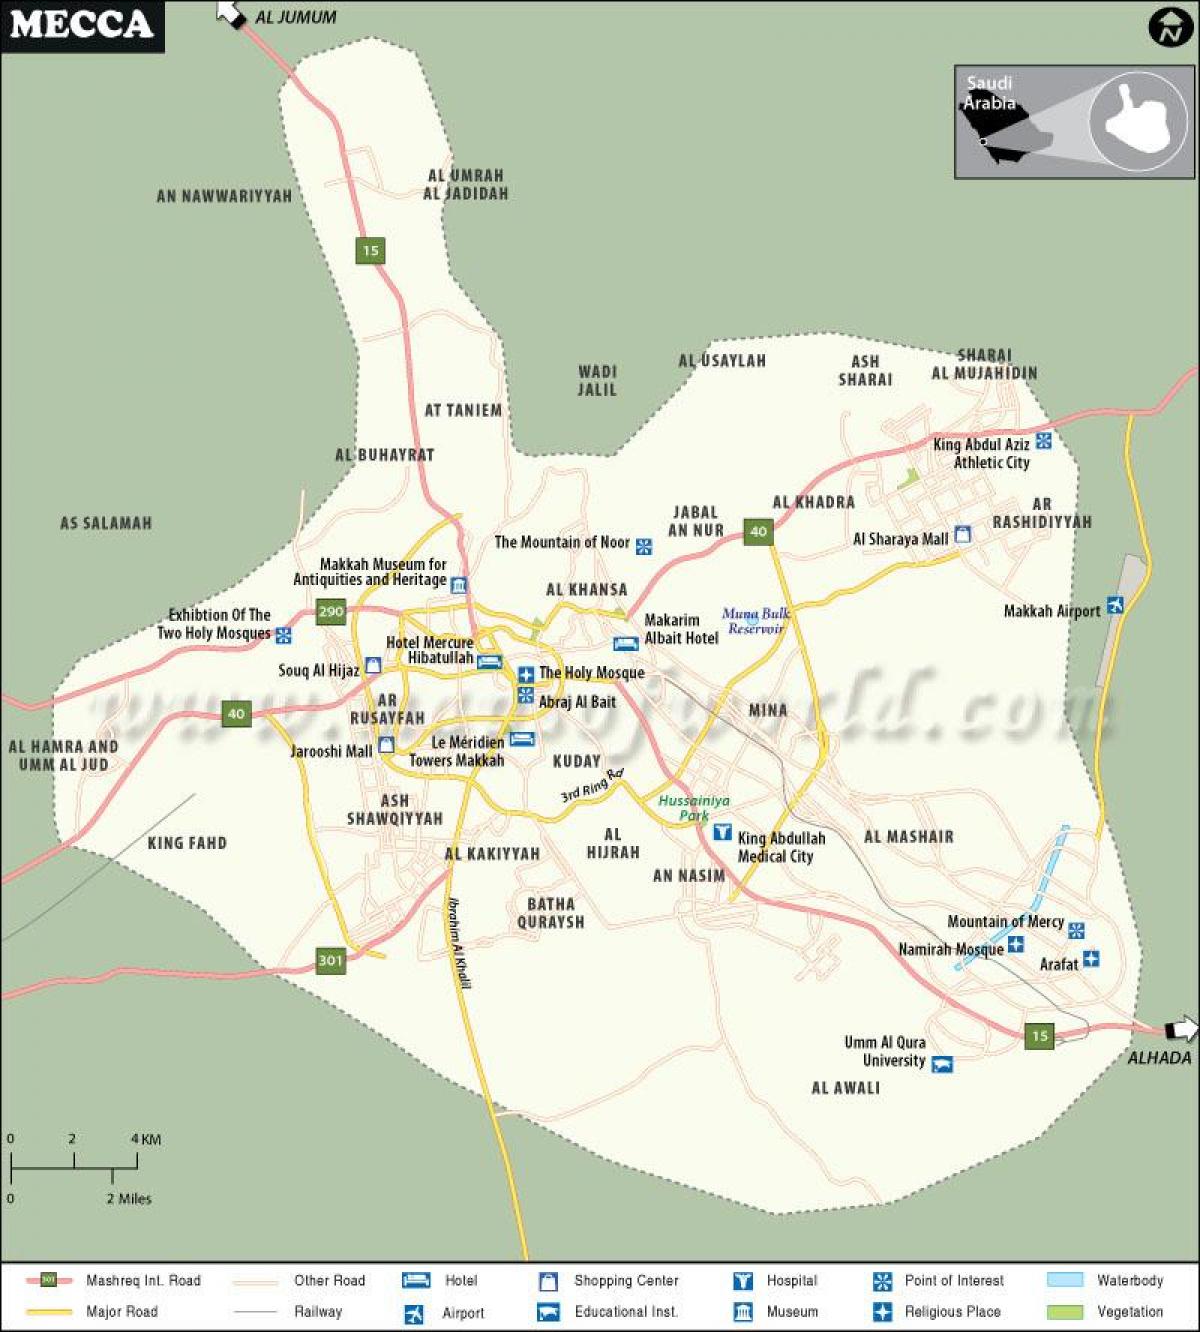 メッカ(Makkah)の観光マップ